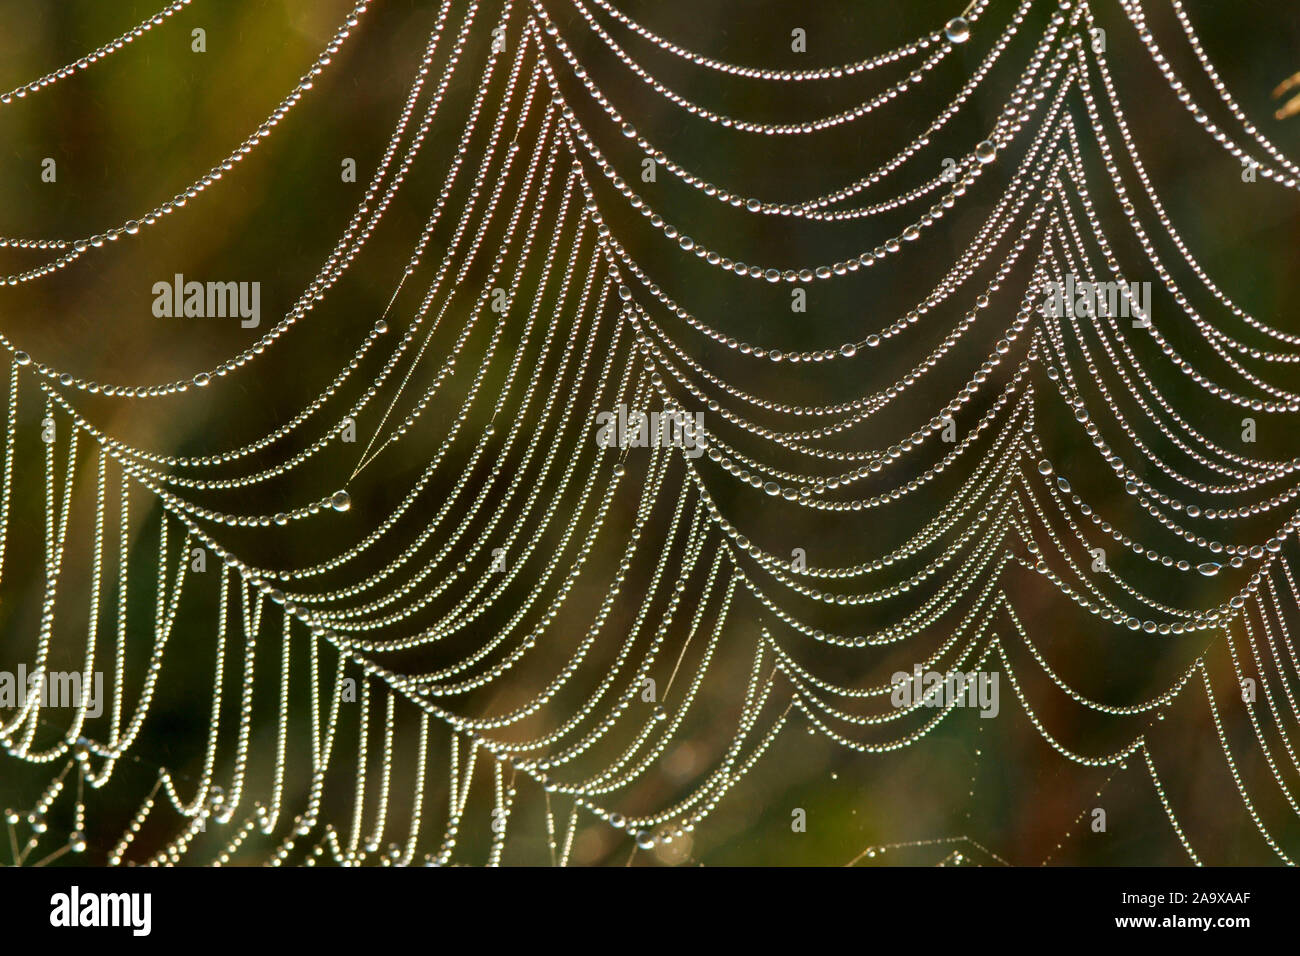 Spinnennetz mit Tautropfen Stock Photo